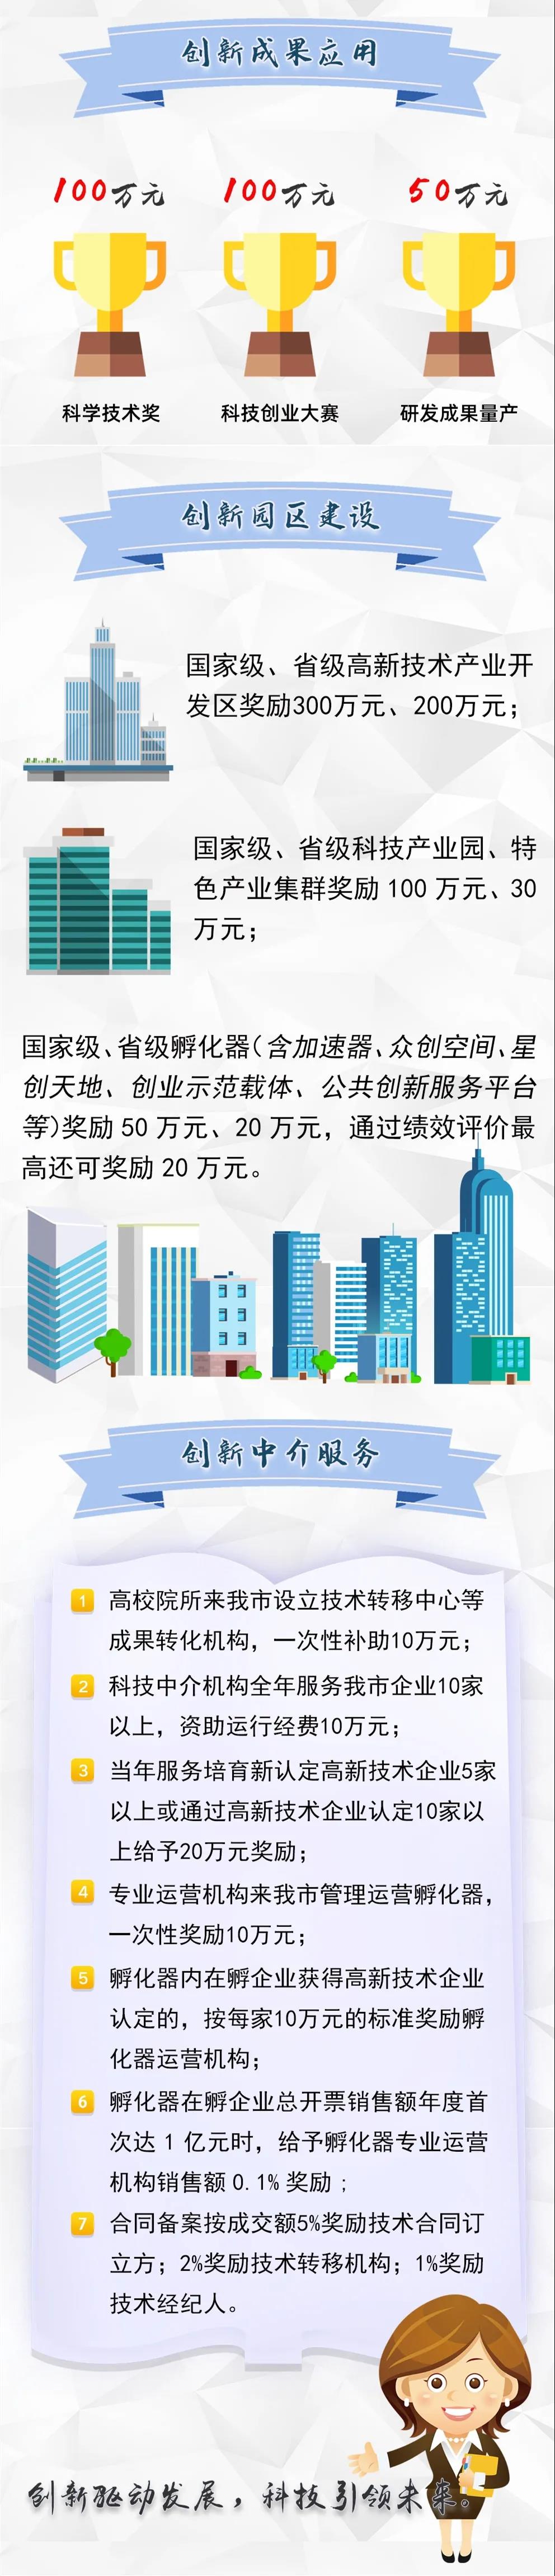 东台市高新技术企业认定30万，一图读懂东台市创新政策18条